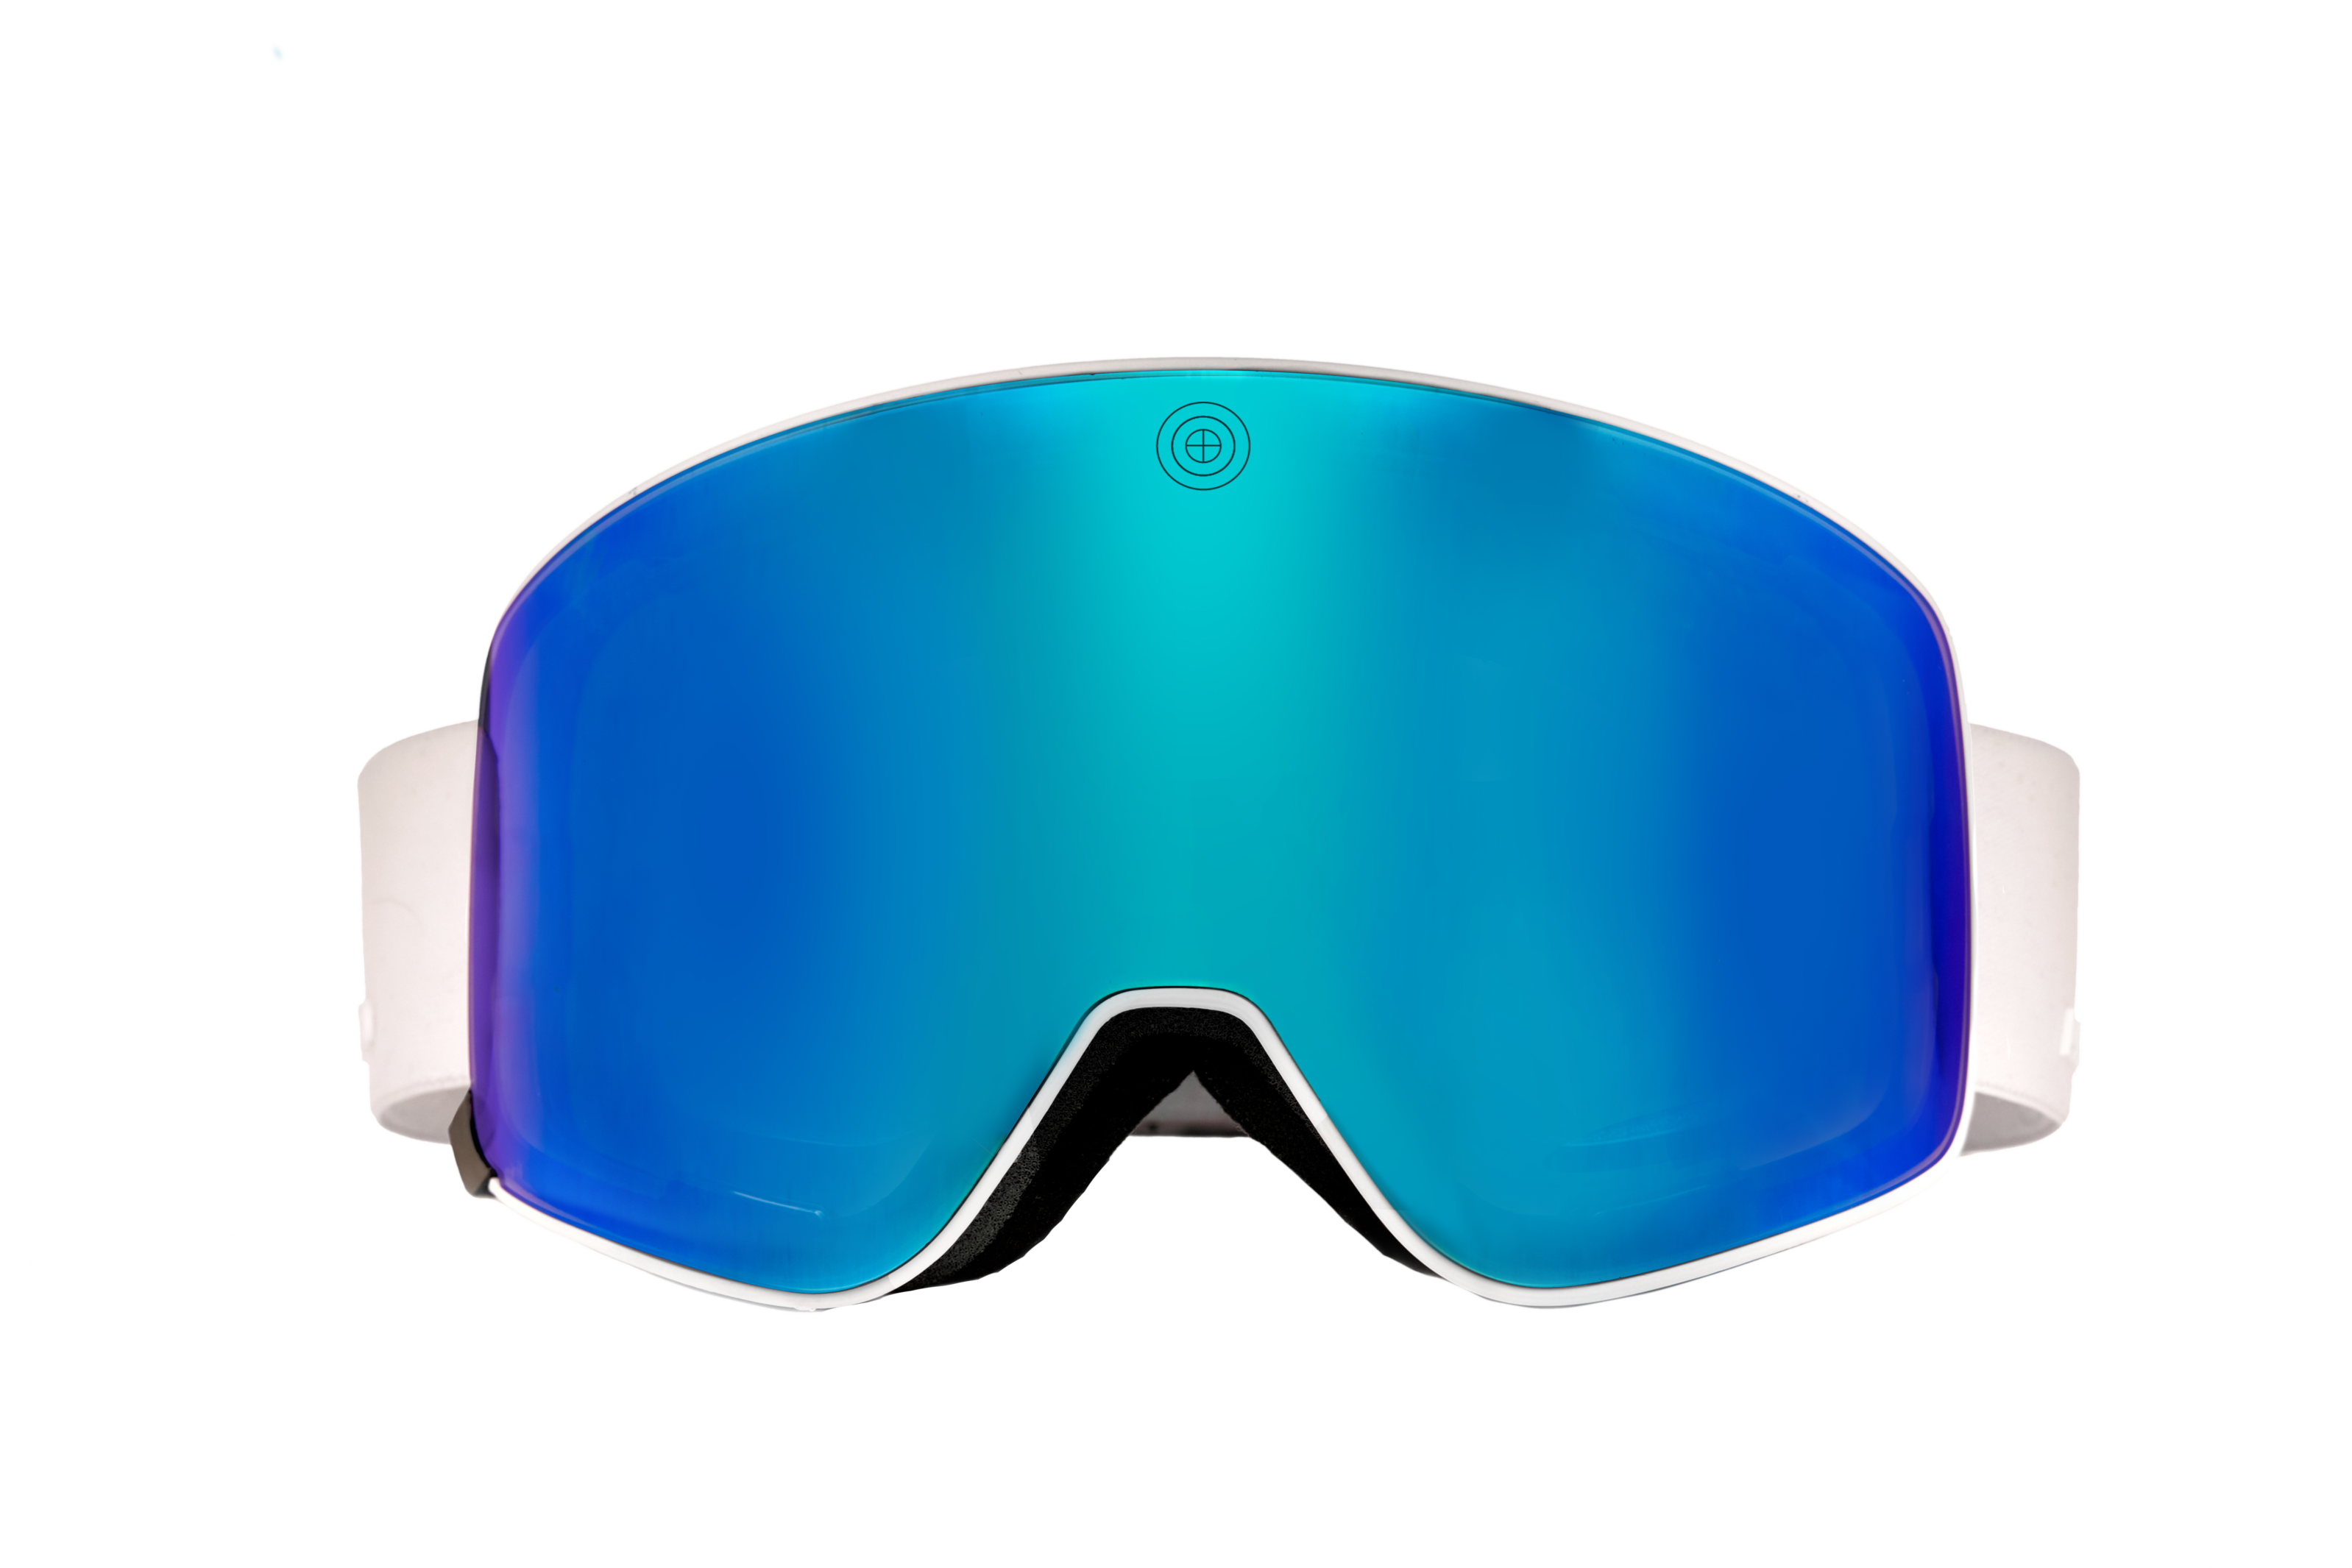 price louis vuitton ski goggles